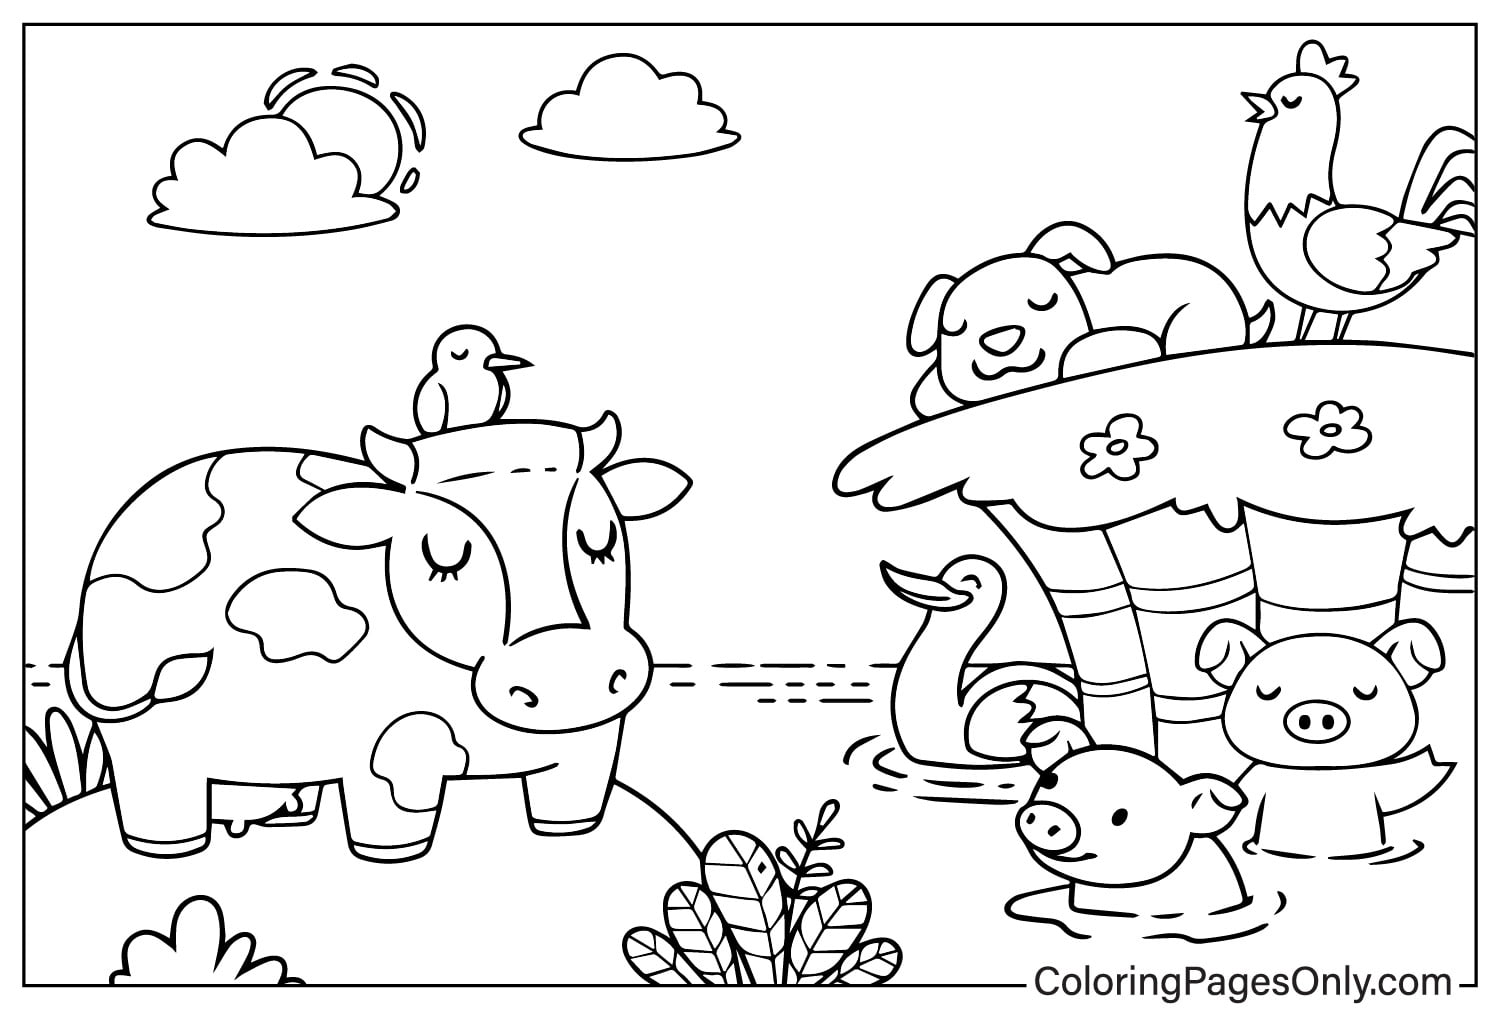 مزرعة الحيوانات مع البقرة والدجاج والكلب ولحم الخنزير والخنزير والبط من حيوانات المزرعة